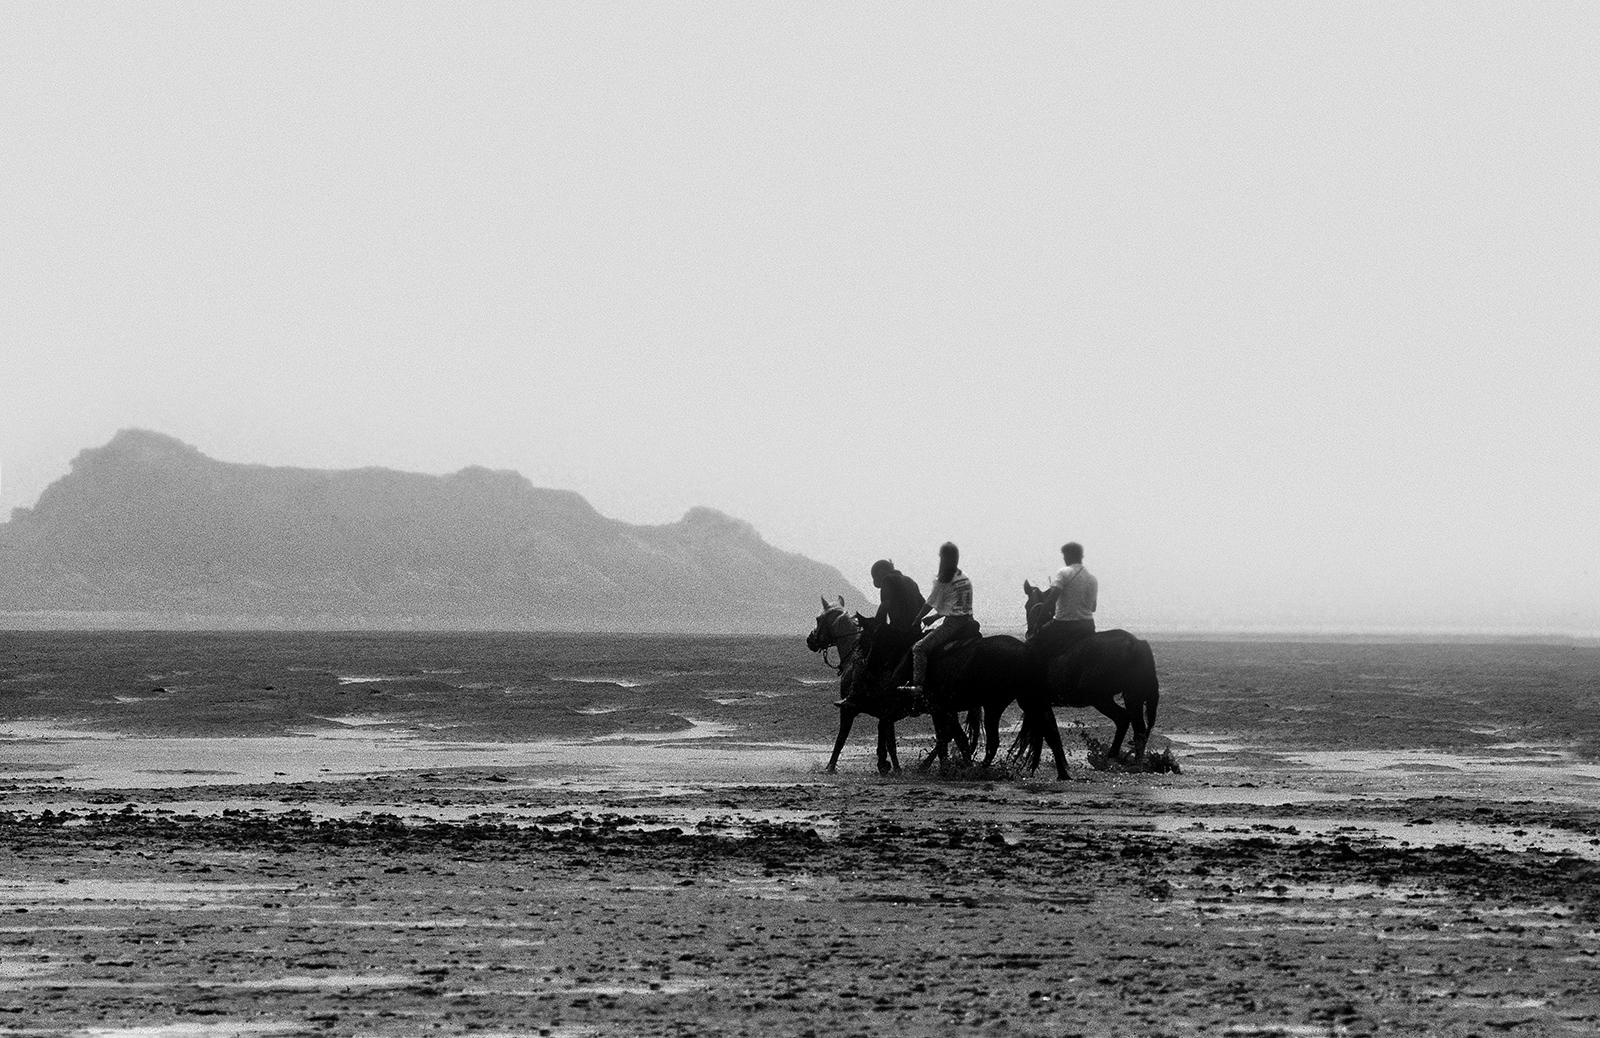 Ian Sanderson Landscape Photograph – Pferde – signierter Tierdruck in limitierter Auflage, Schwarz-Weiß, Strand, Landschaftspferd